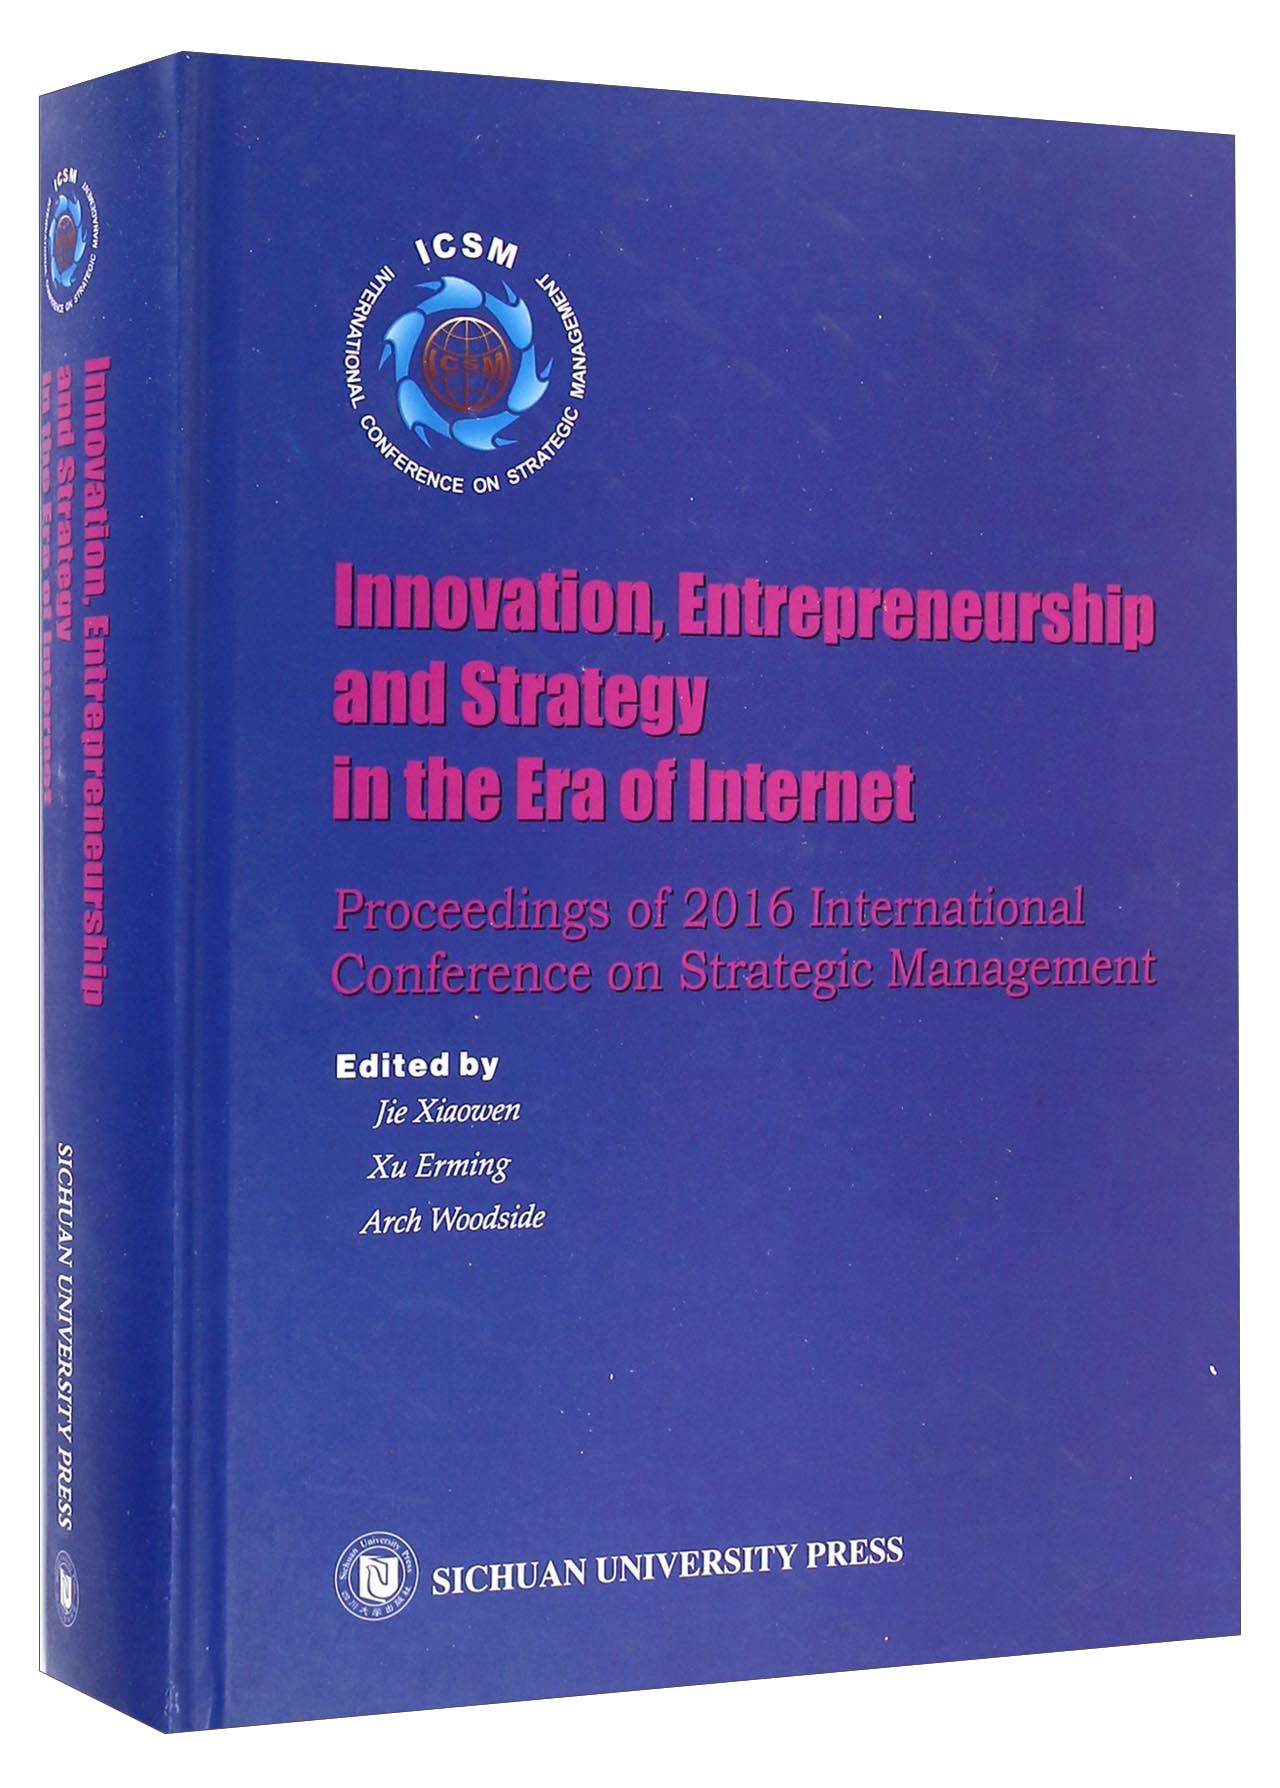 互联网时代下的创新创业与战略 2016战略管理国际会议论文集（英文版） kindle格式下载